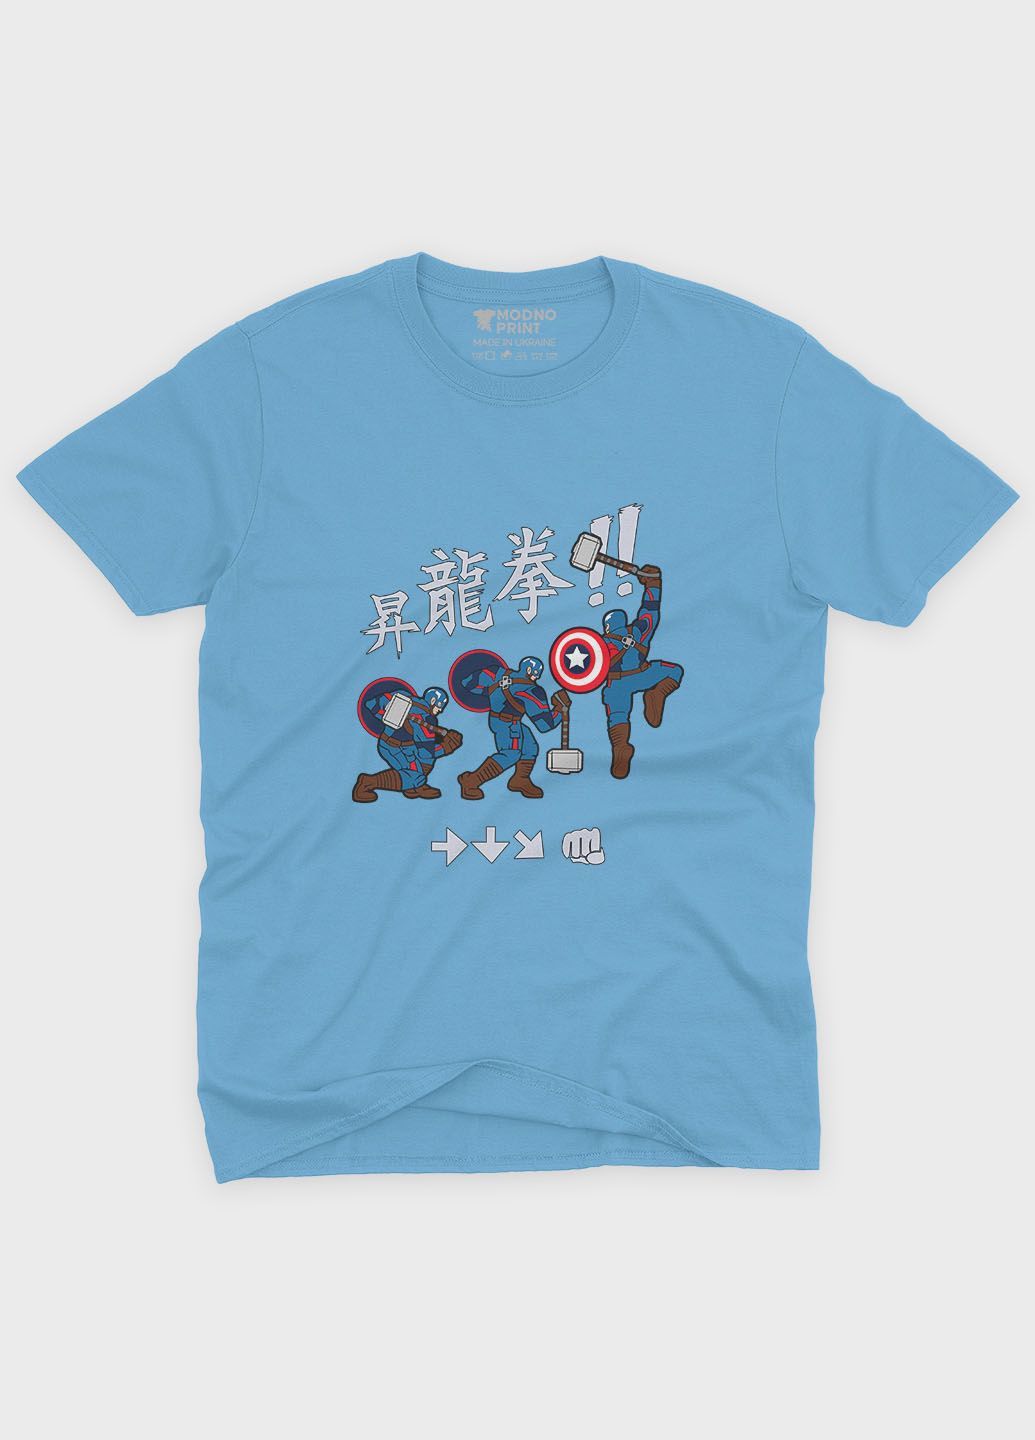 Голубая демисезонная футболка для девочки с принтом супергероя - капитан америка (ts001-1-lbl-006-022-009-g) Modno